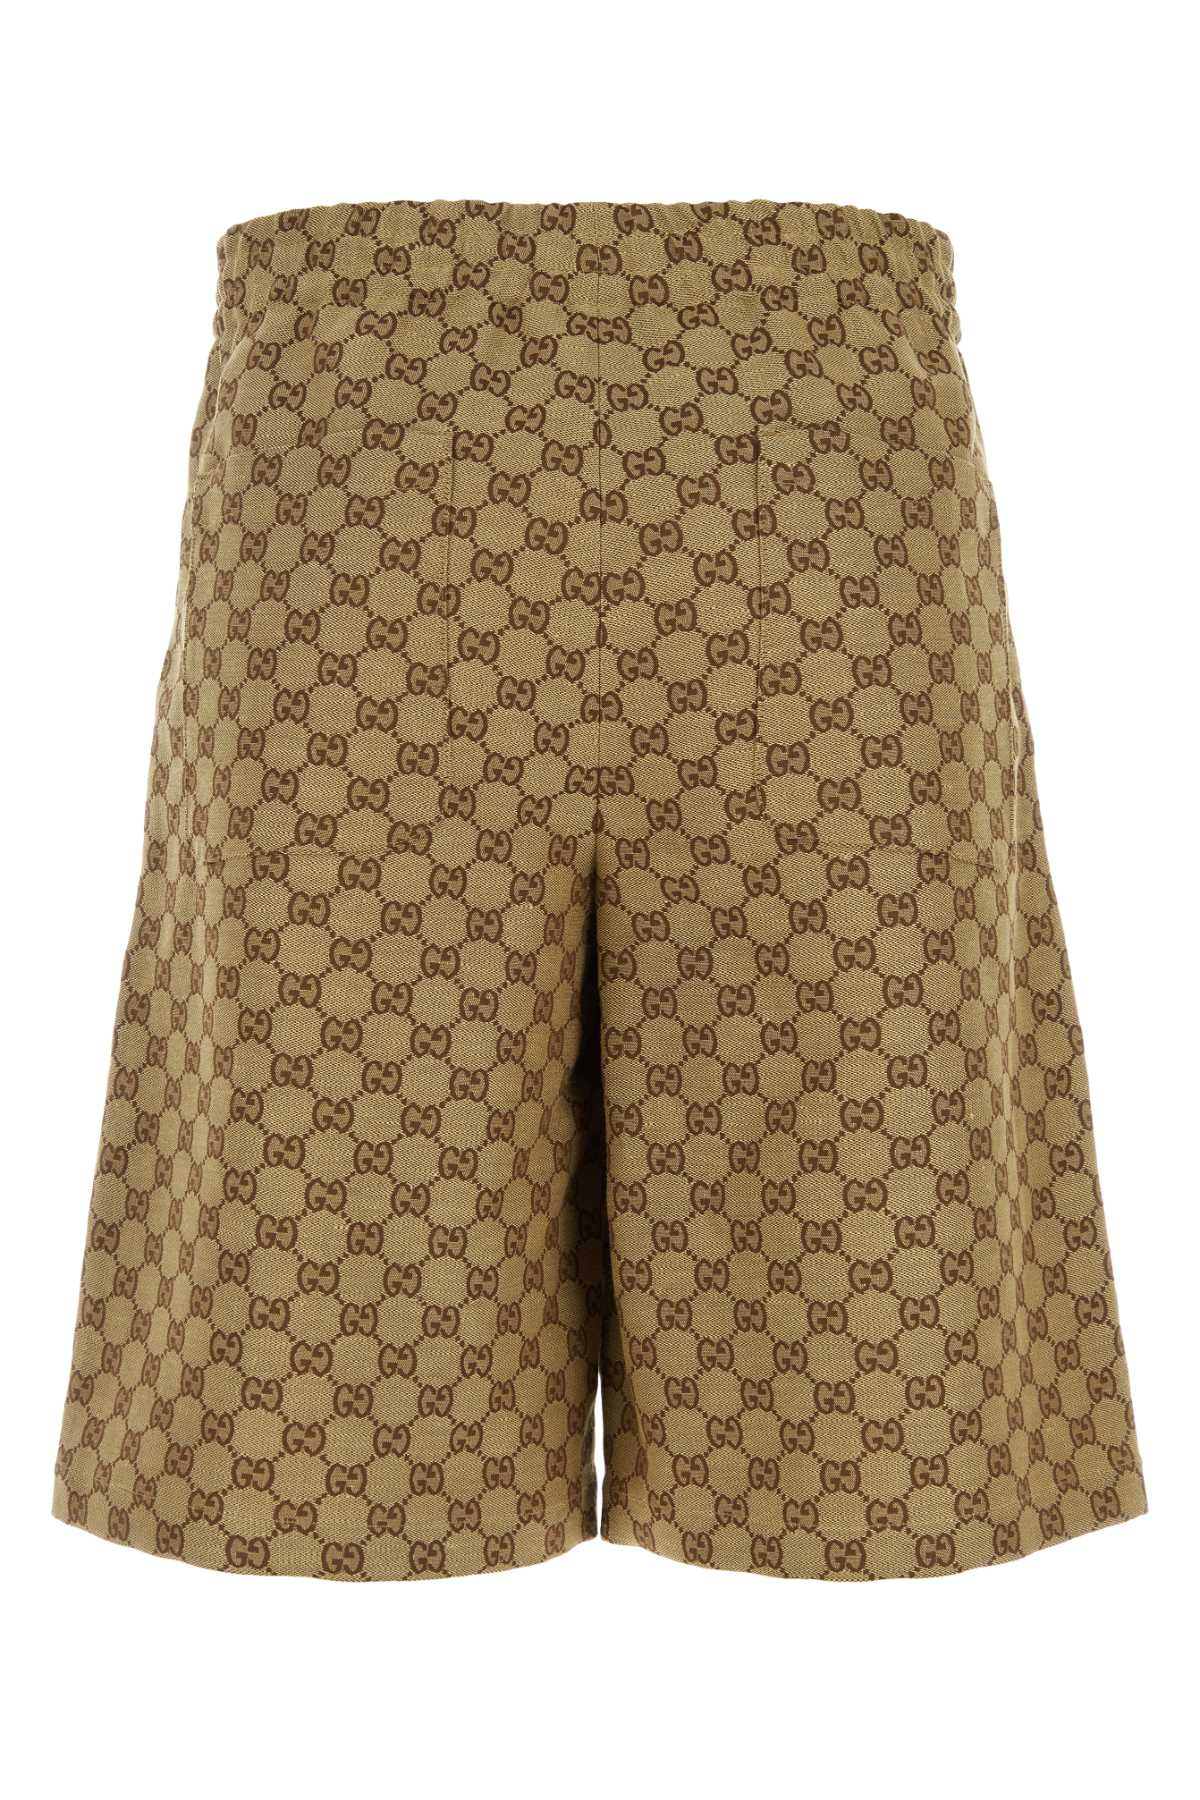 Gucci Gg Supreme Fabric Bermuda Shorts In Camelebony